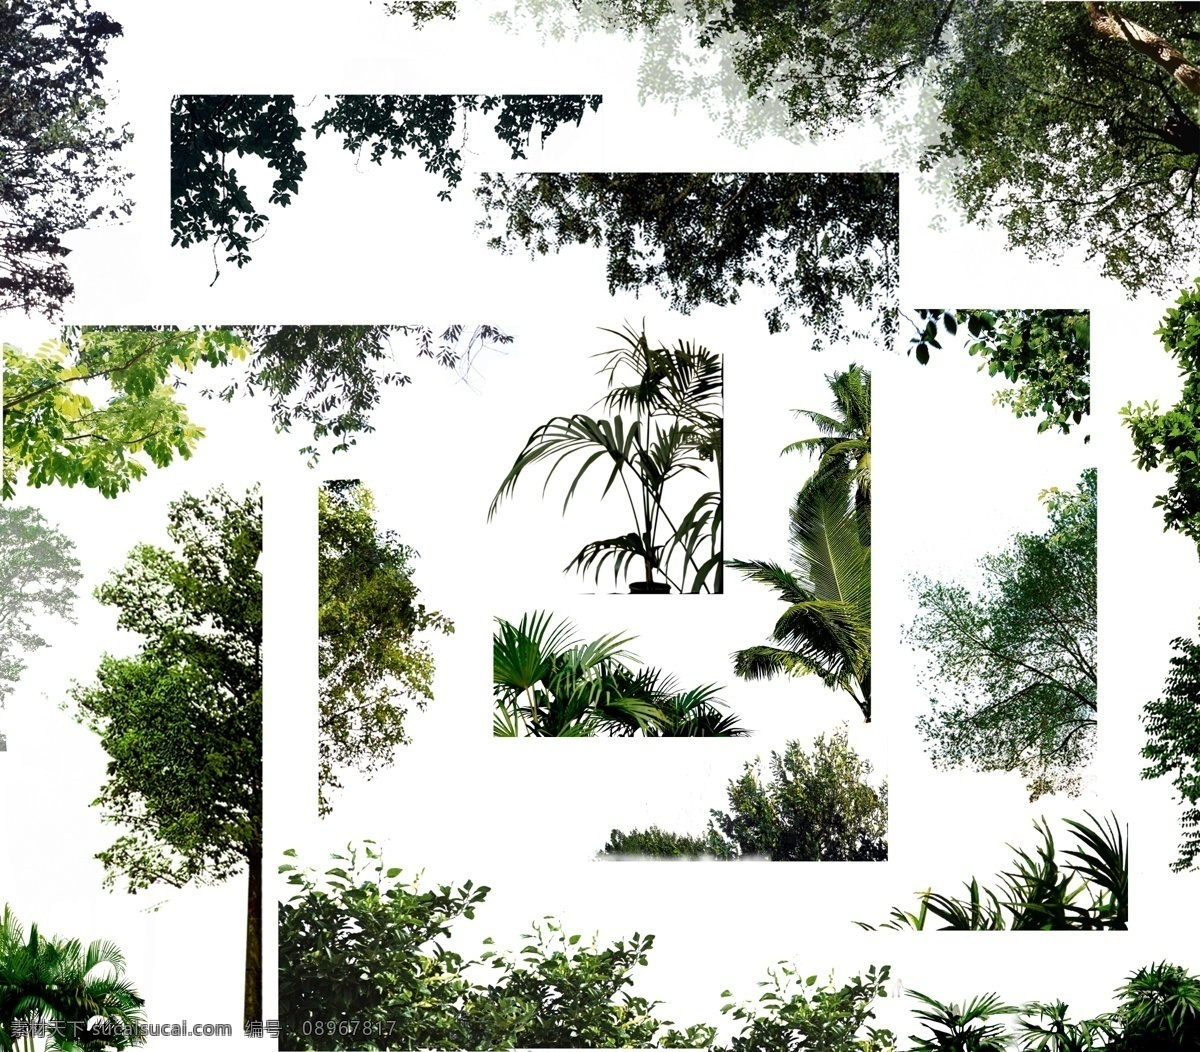 效果图 前景 树 室外 配景 园林 景观 贴图 园林建筑 建筑配景 装饰 风景 分层 源文件